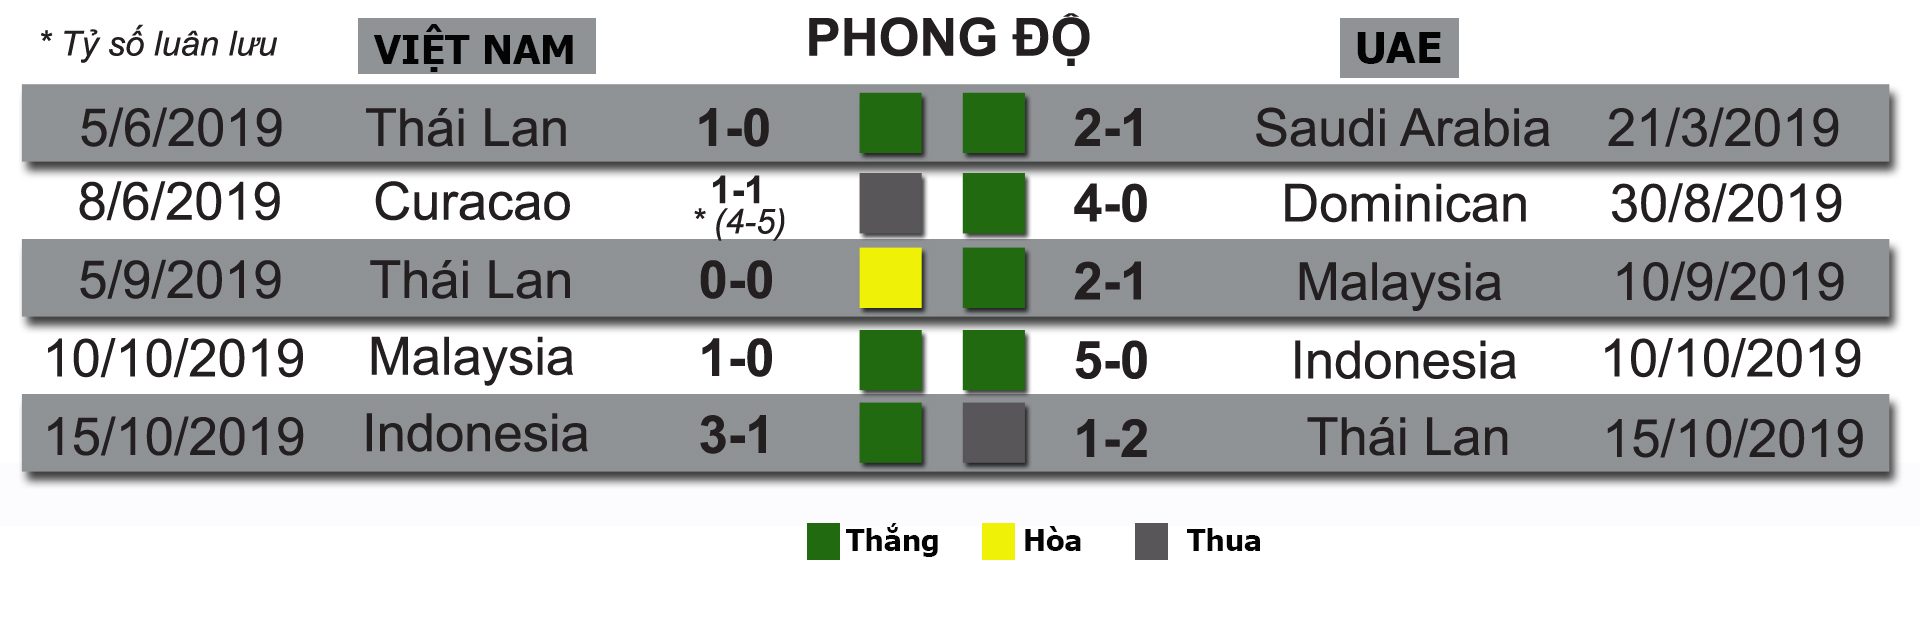 Nhận định bóng đá Việt Nam - UAE: Hừng hực khí thế tái lập siêu kỳ tích 2007 (Vòng loại World Cup) - 6